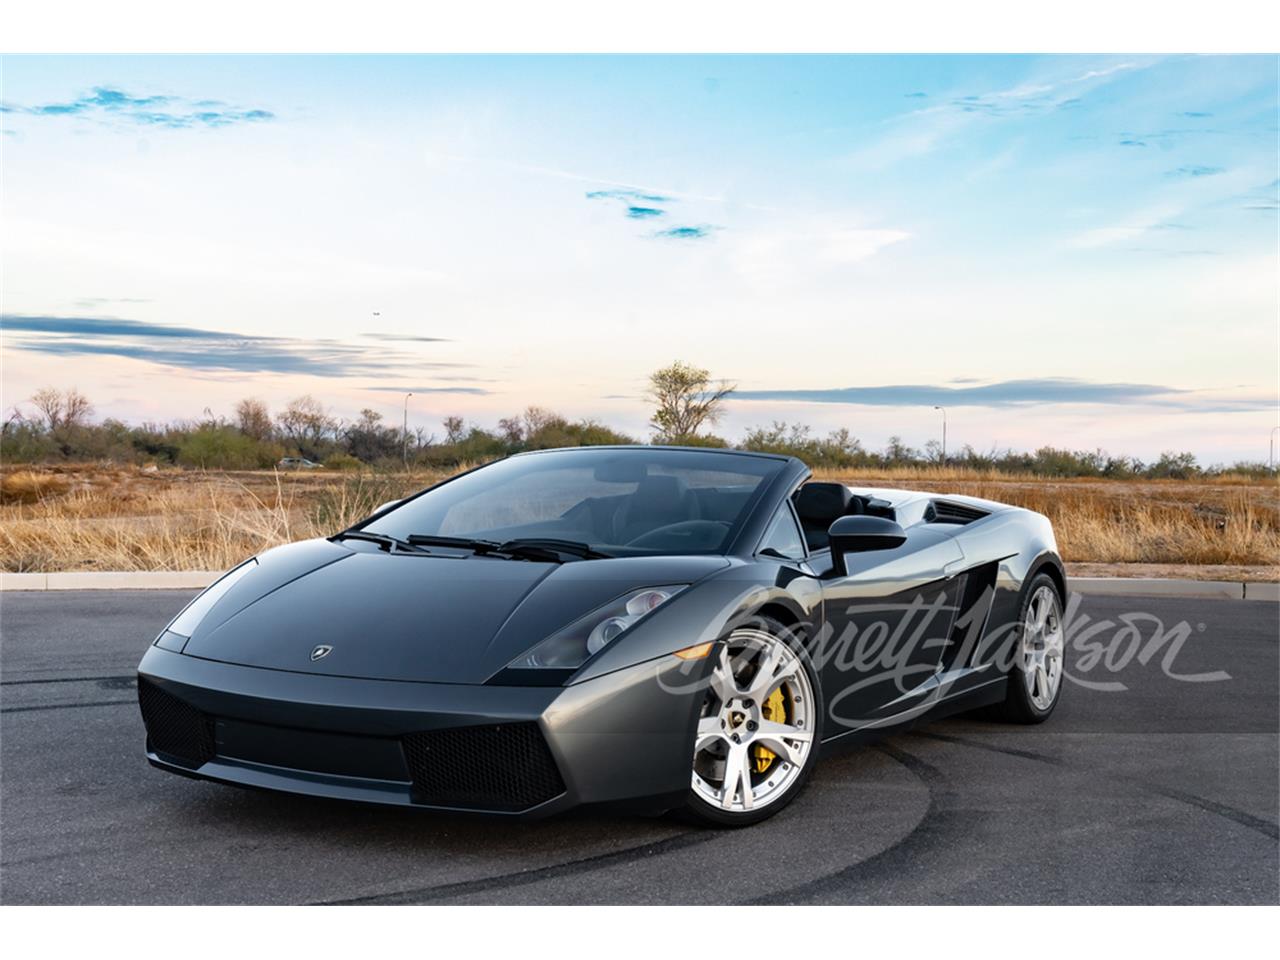 For Sale at Auction: 2006 Lamborghini Gallardo in Scottsdale, Arizona for sale in Scottsdale, AZ